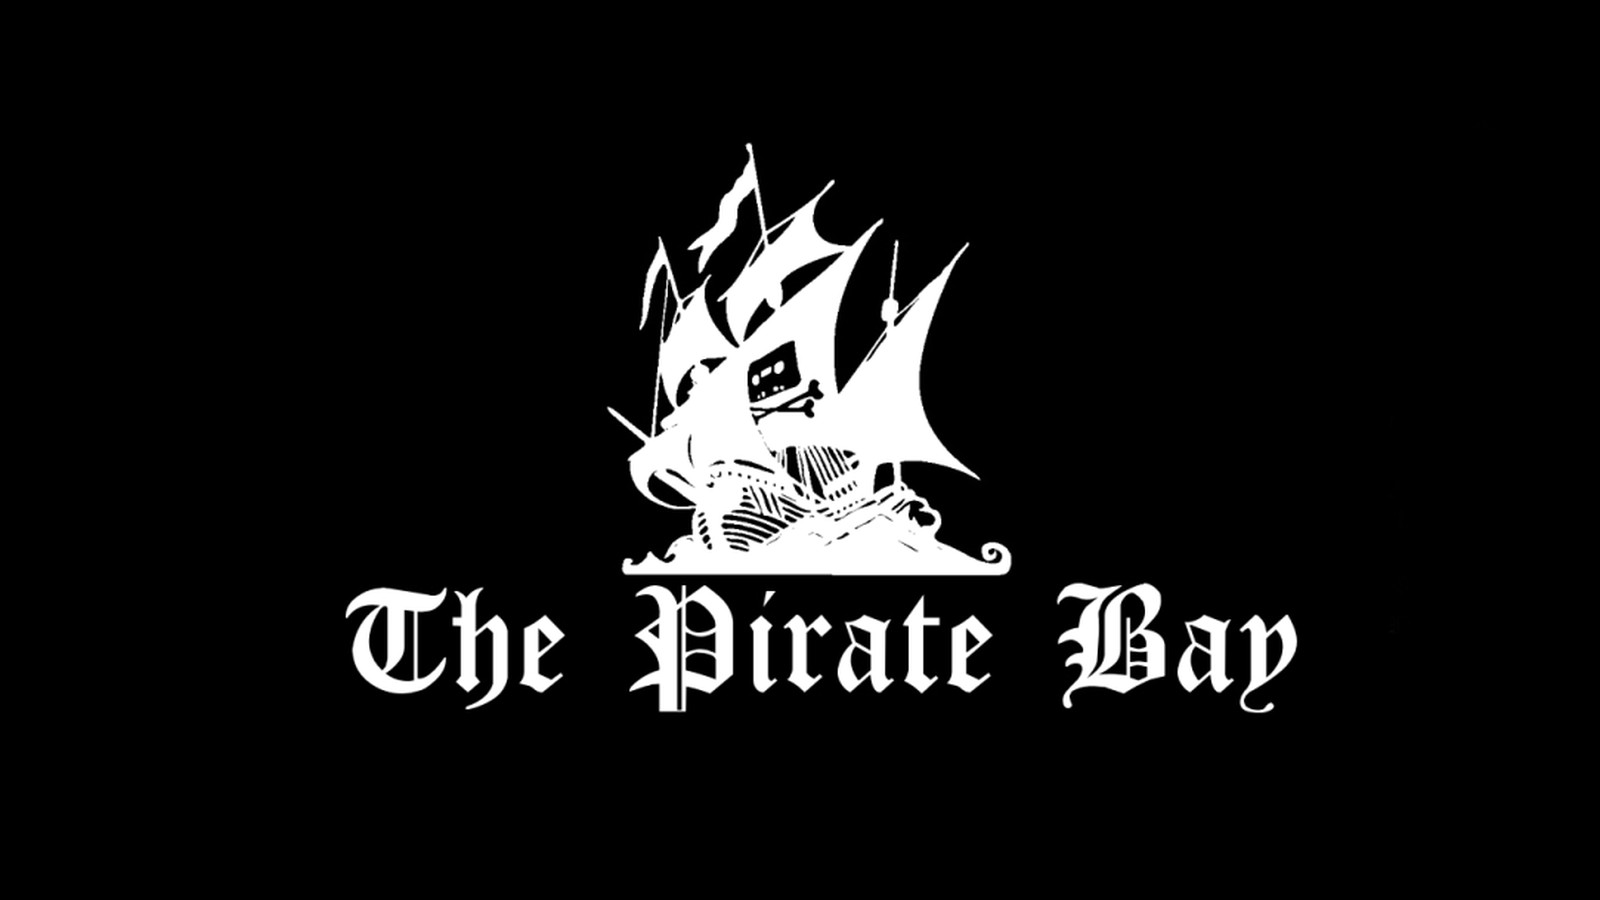 Adobe premiere torrent pirate bay mac games